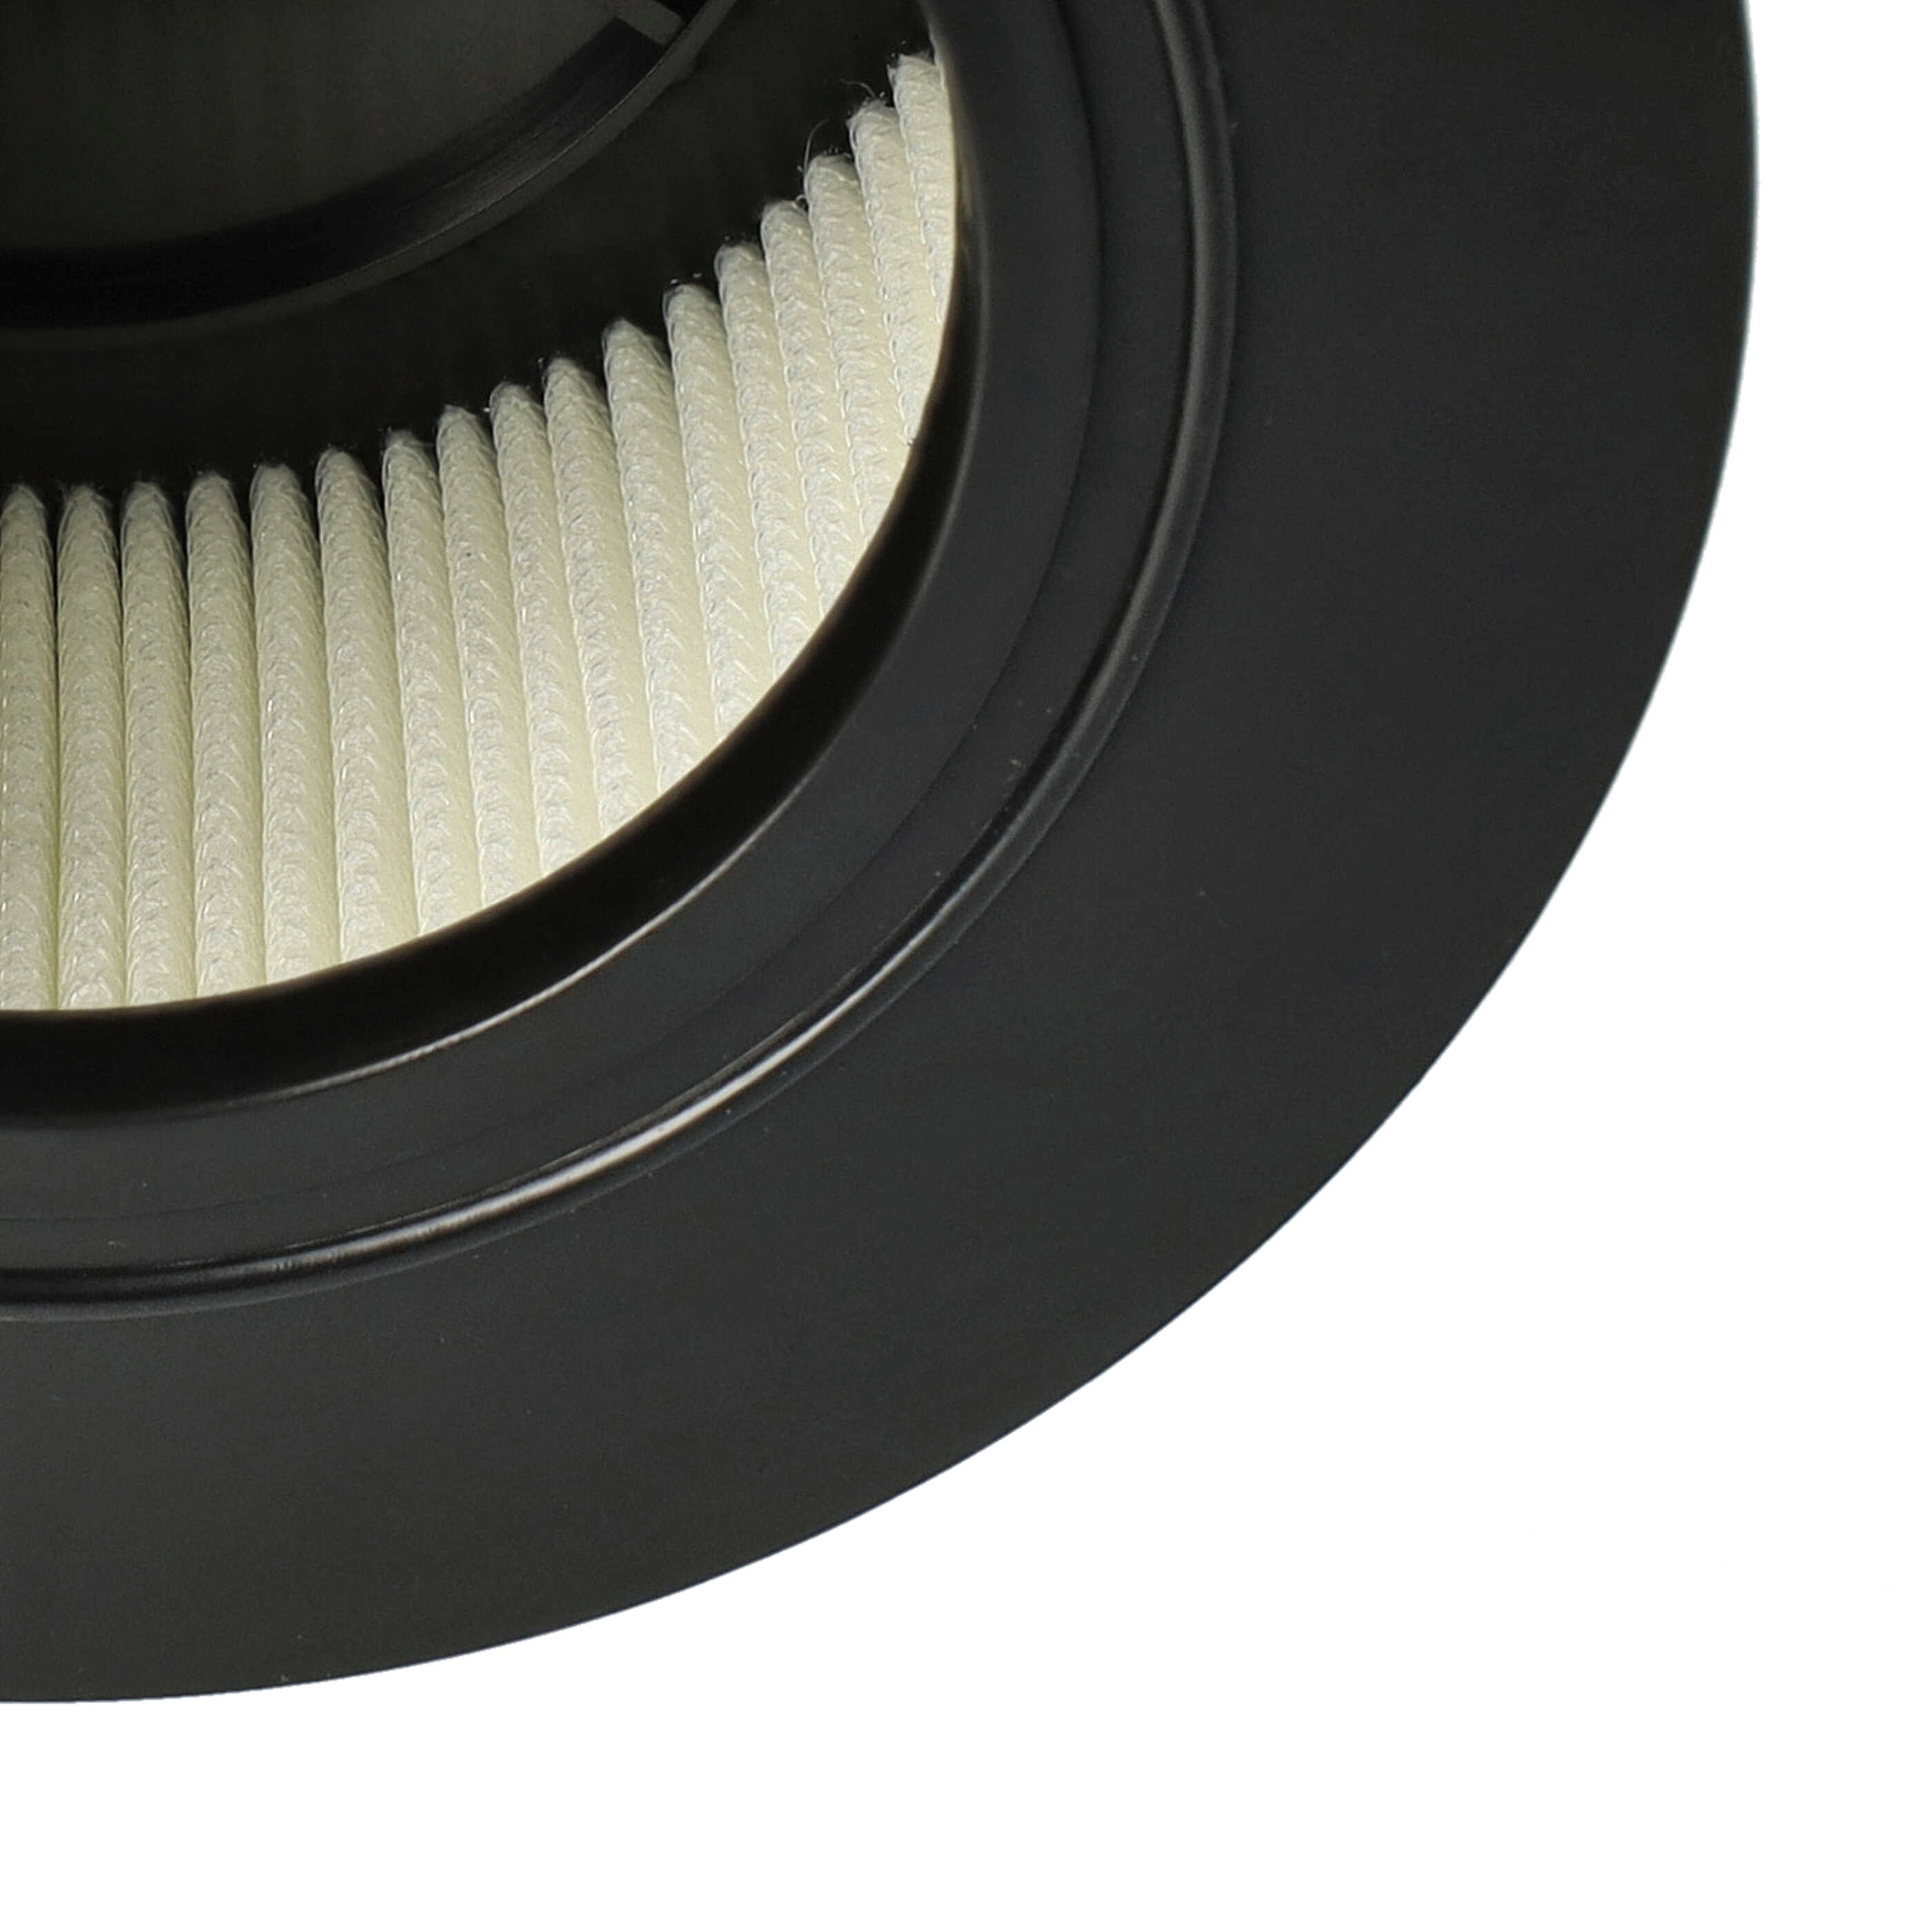 Filtre remplace Flex 445.126 pour aspirateur - filtre HEPA H-amiante